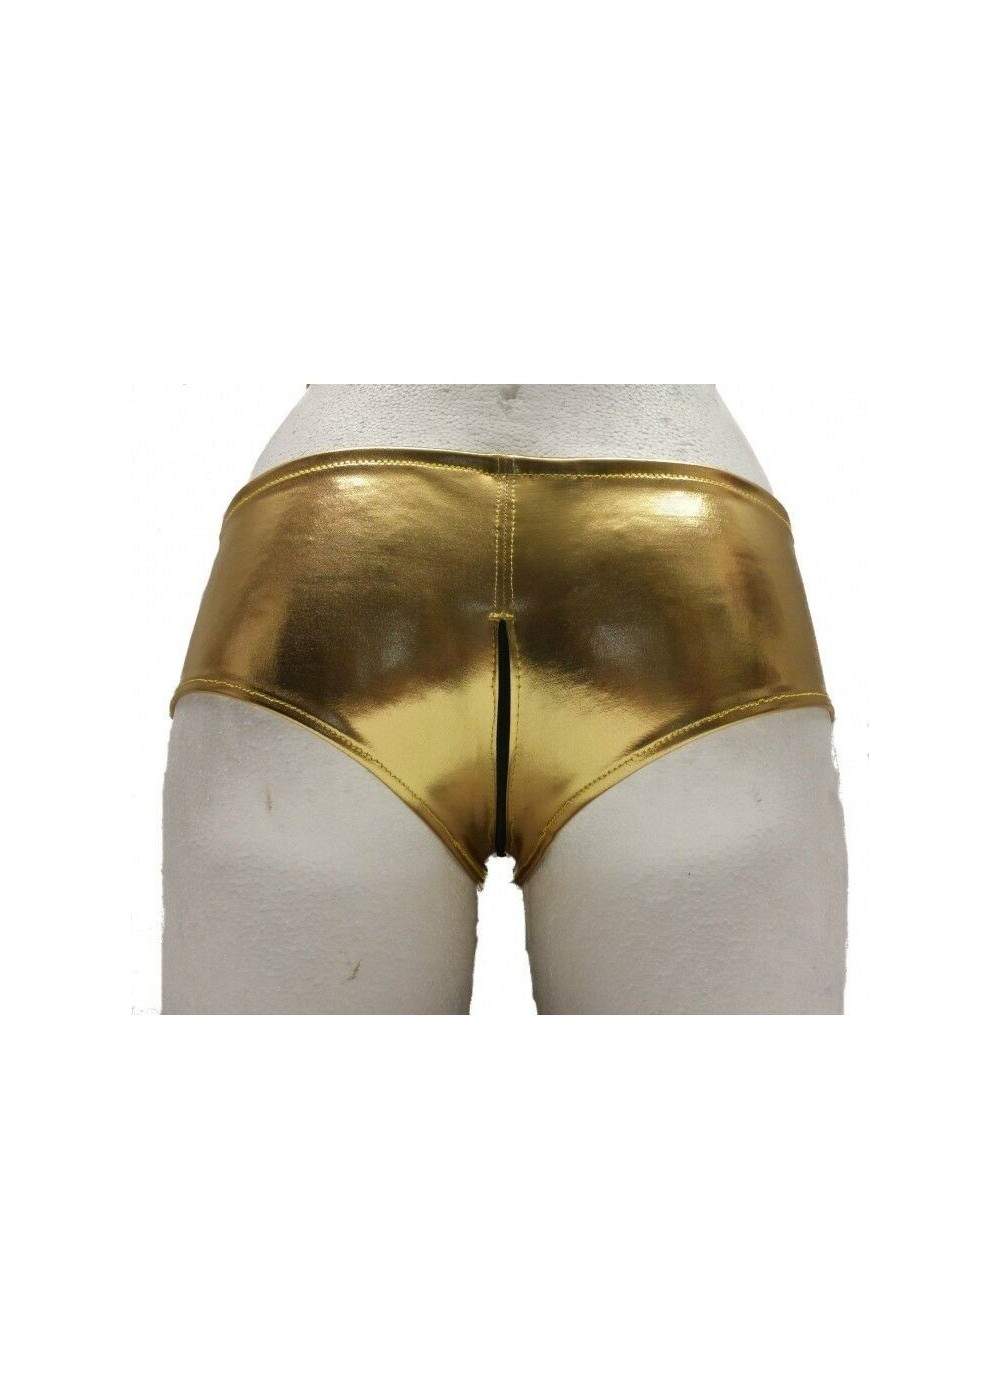 Pantalones calientes Ouvert de cuero dorado con cremallera Tallas 34 - 42